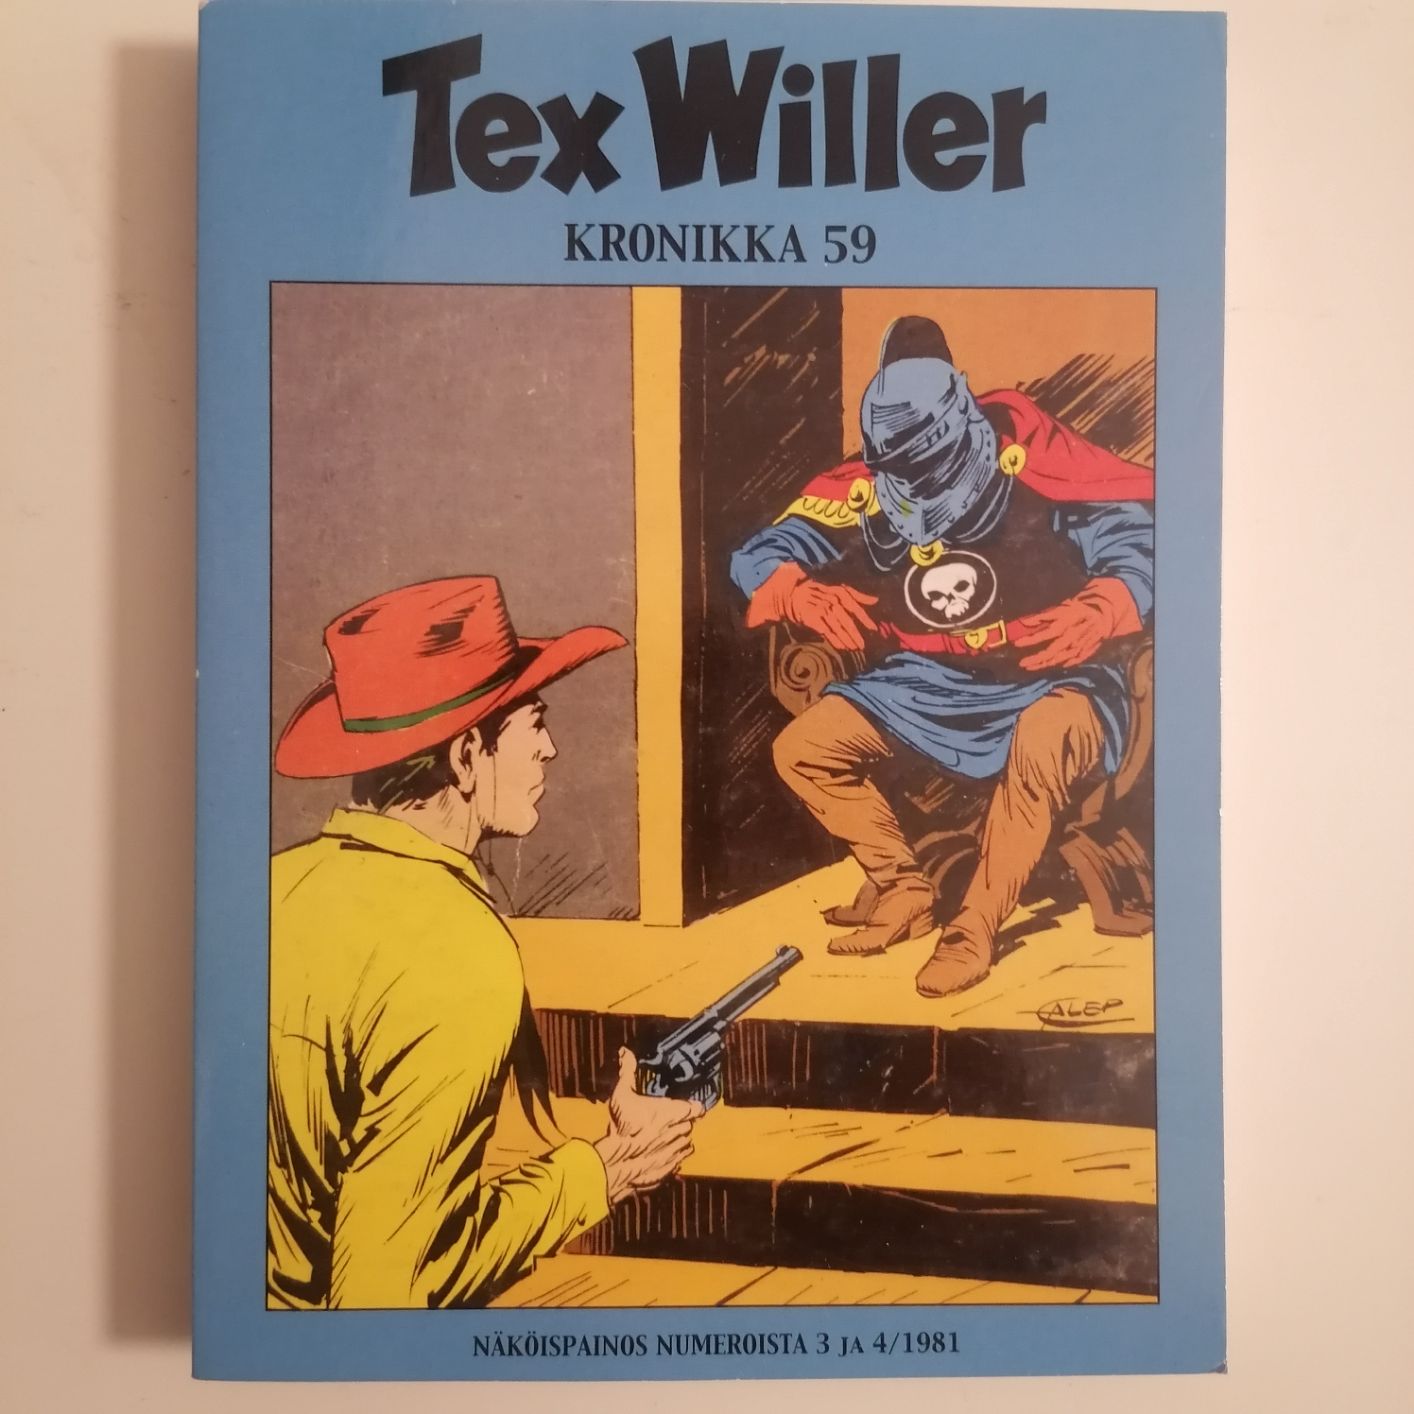 Tex Willer Kronikka 59 näköispainos numerot 3ja 4 siisti kuntoinen ja lukematon hinta 5,50euroa.